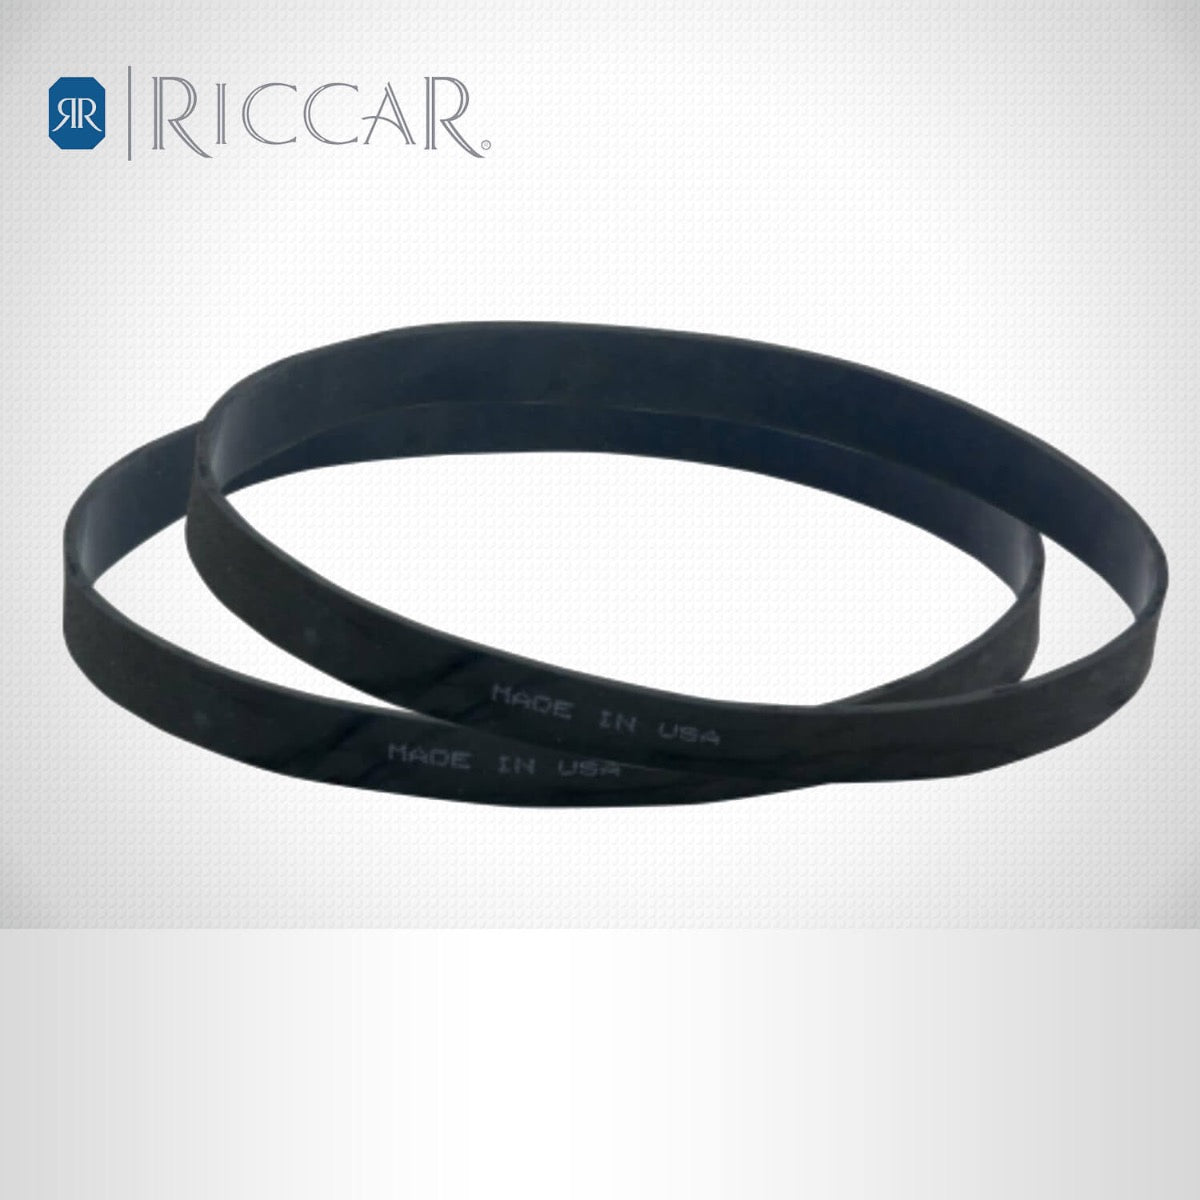 Riccar R25